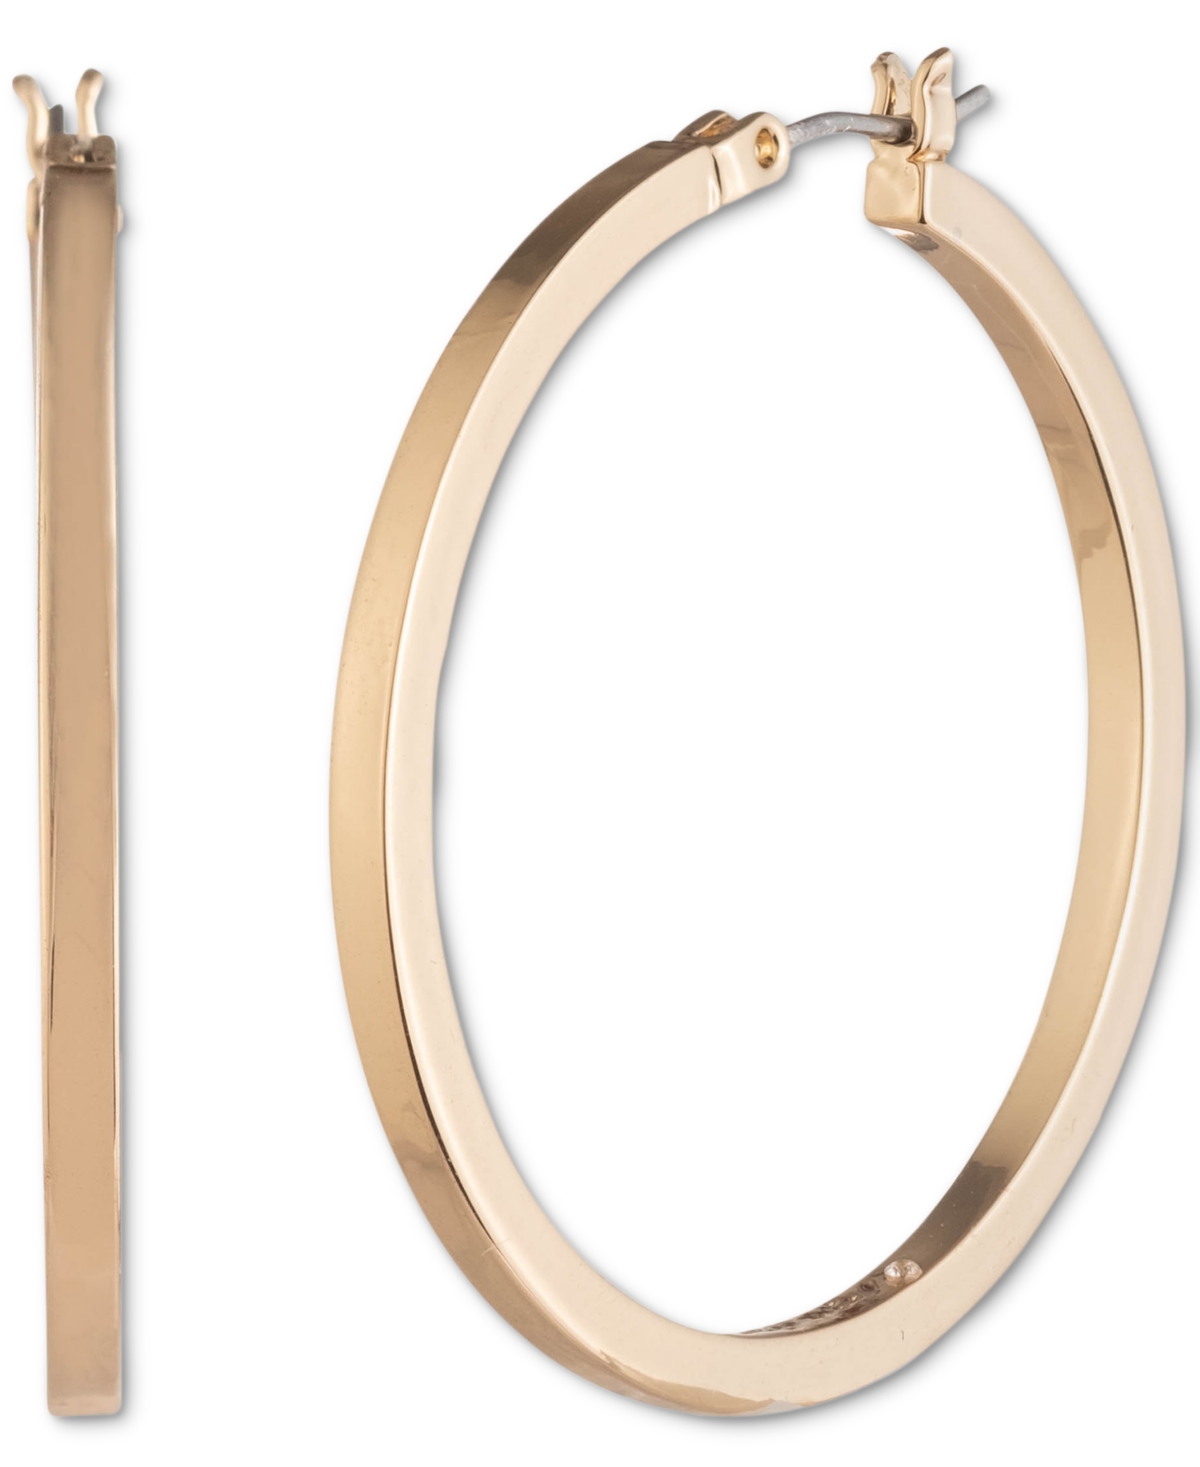 Karl Lagerfeld Medium Hoop Earrings, 1.45" In Gold